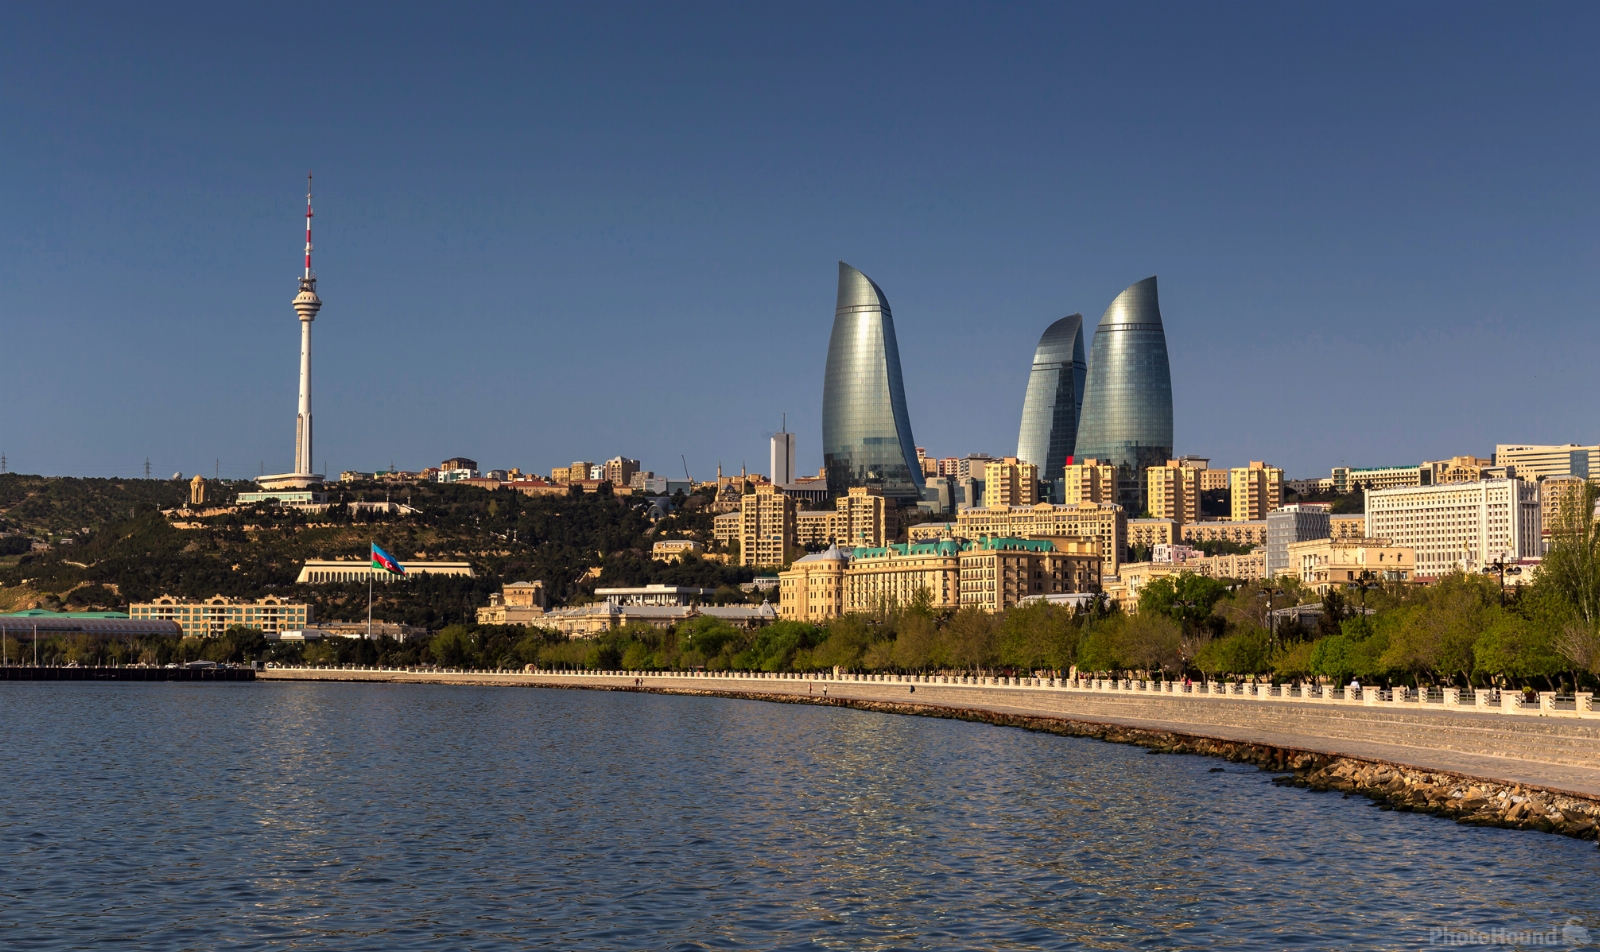 Azerbaijan photo locations